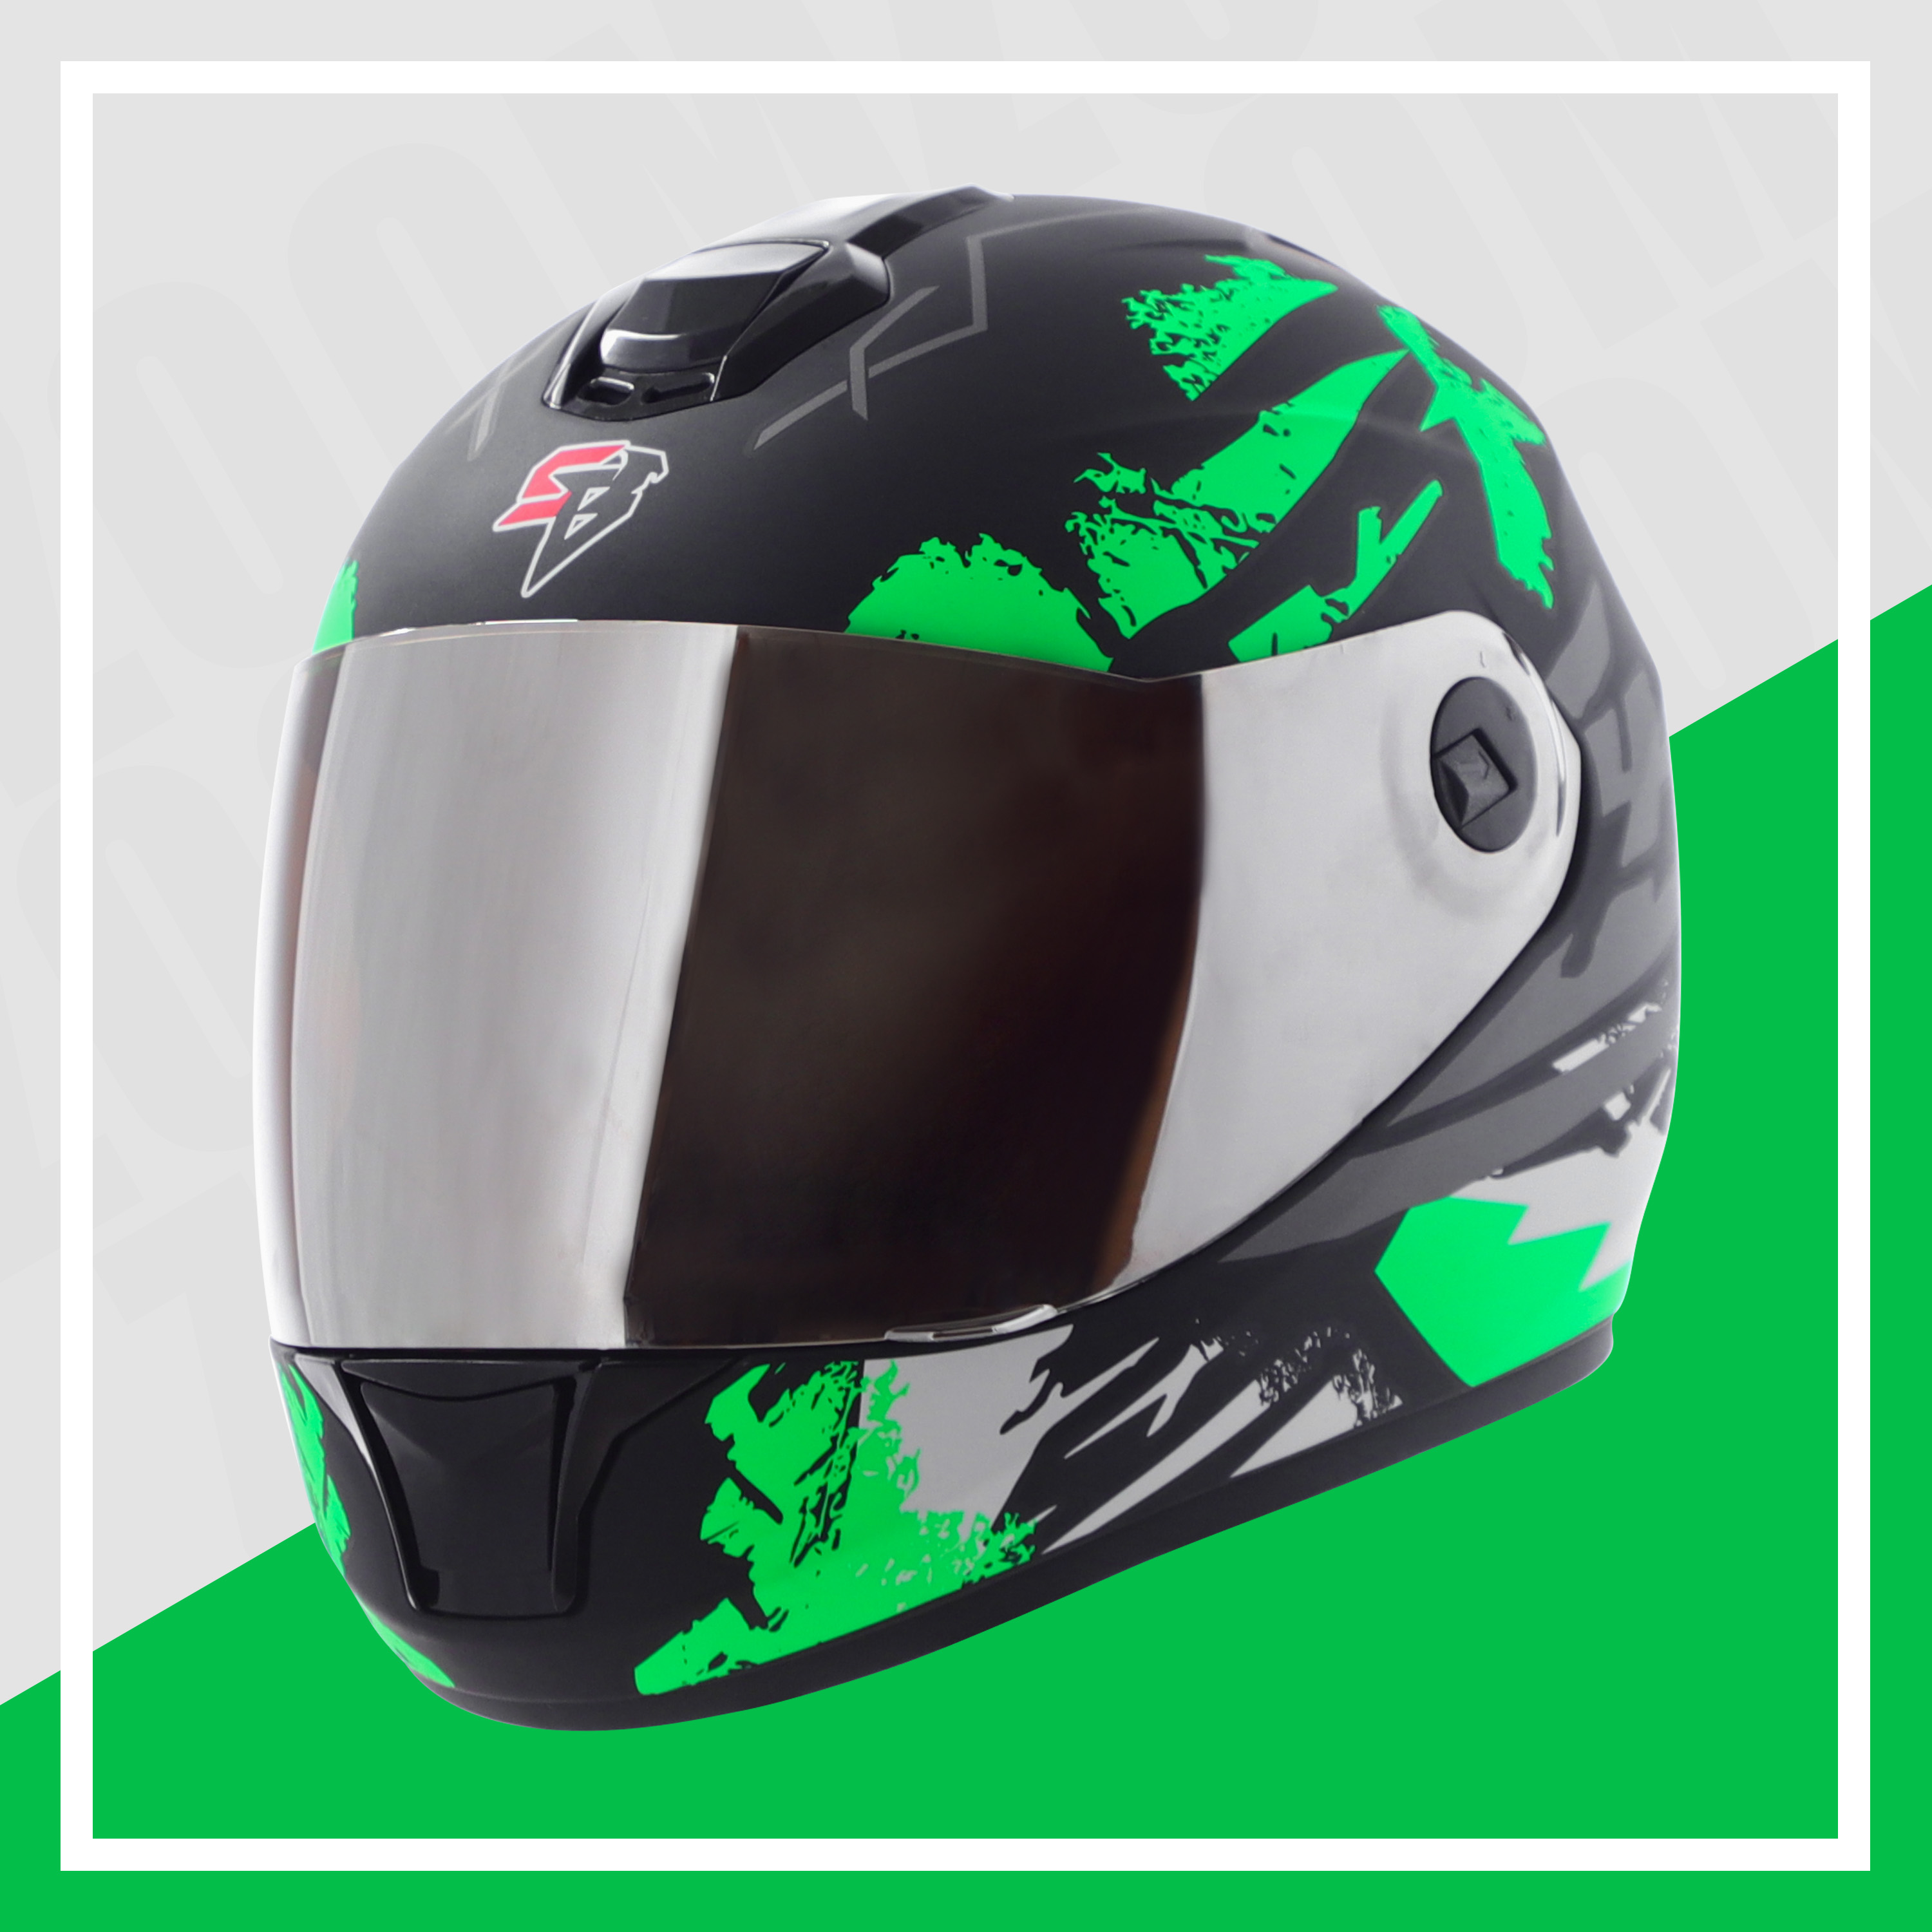 Steelbird SBH-11 Zoom Racer ISI Certified Full Face Graphic Helmet For Men And Women (Matt Black Green With Chrome Silver Visor)